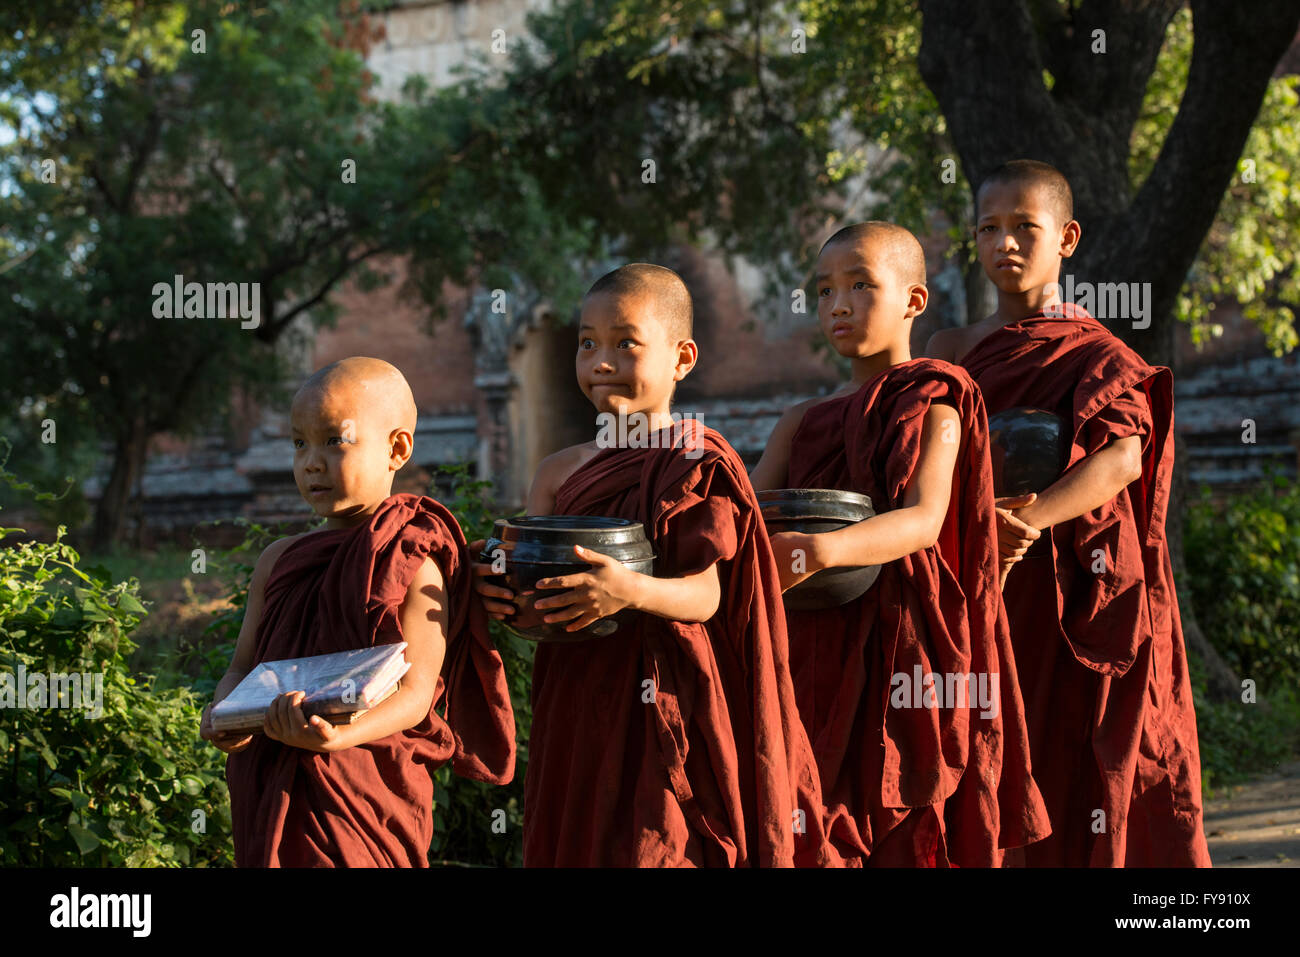 Le Myanmar, Amarapura, Monastère Mahagandayon, des moines bouddhistes avec bols alimentaires de recueillir les dons pour leur repas Banque D'Images